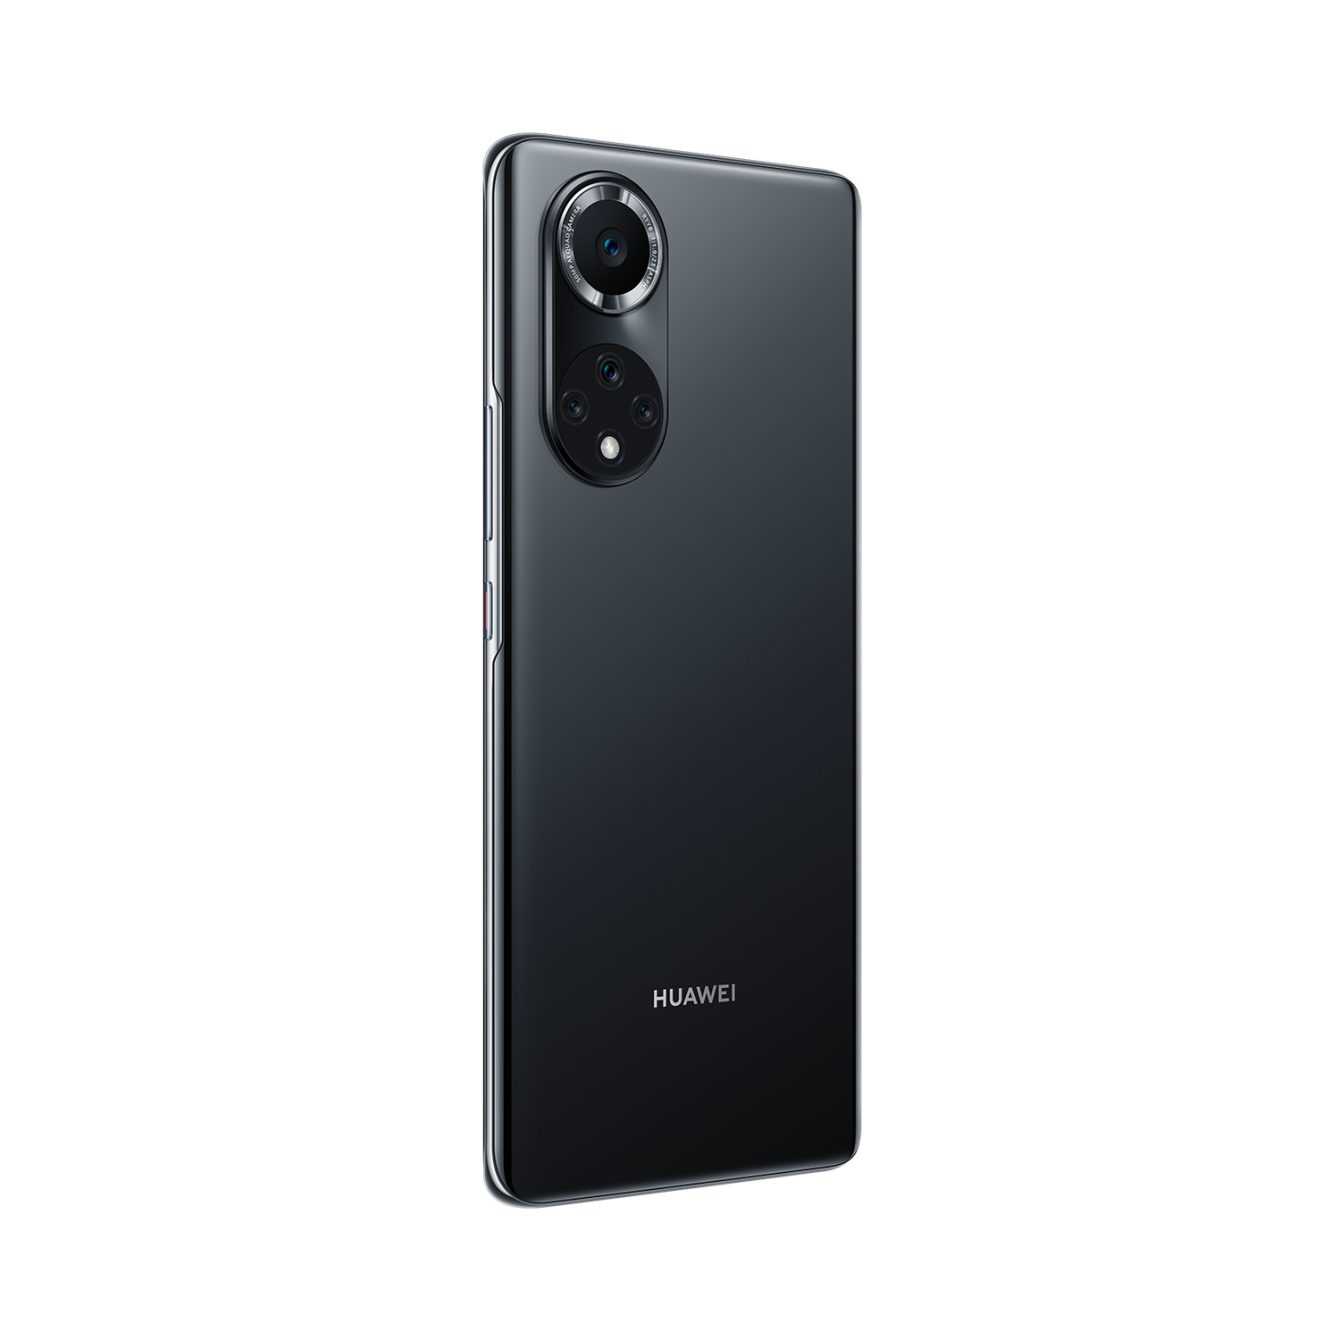 Huawei Nova 9: il nuovo smartphone annunciato